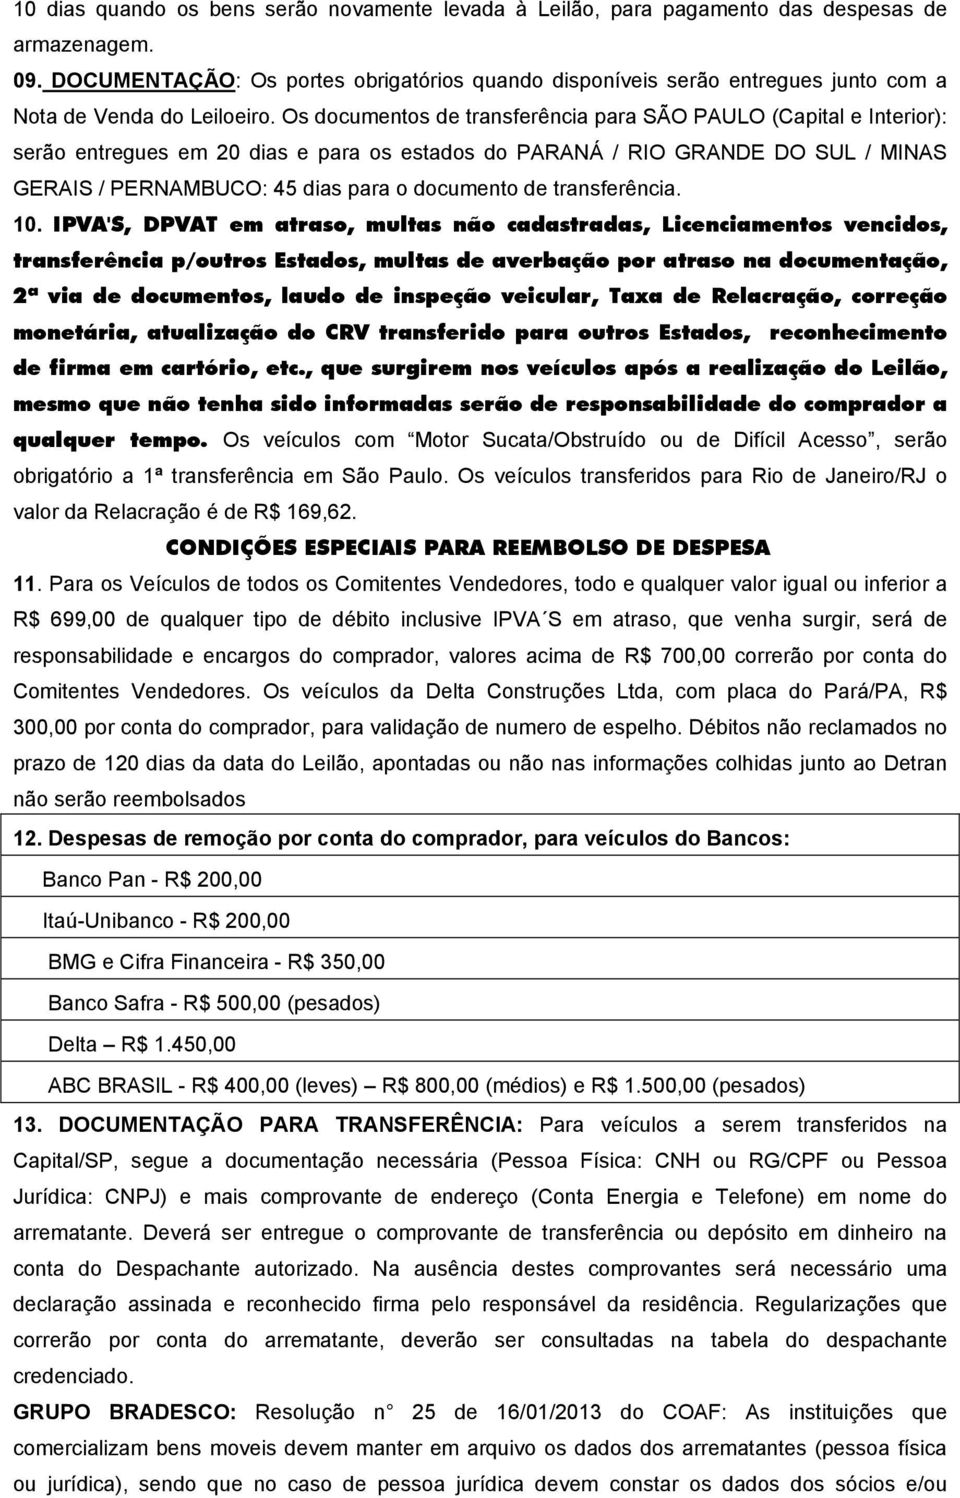 Os documentos de transferência para SÃO PAULO (Capital e Interior): serão entregues em 20 dias e para os estados do PARANÁ / RIO GRANDE DO SUL / MINAS GERAIS / PERNAMBUCO: 45 dias para o documento de